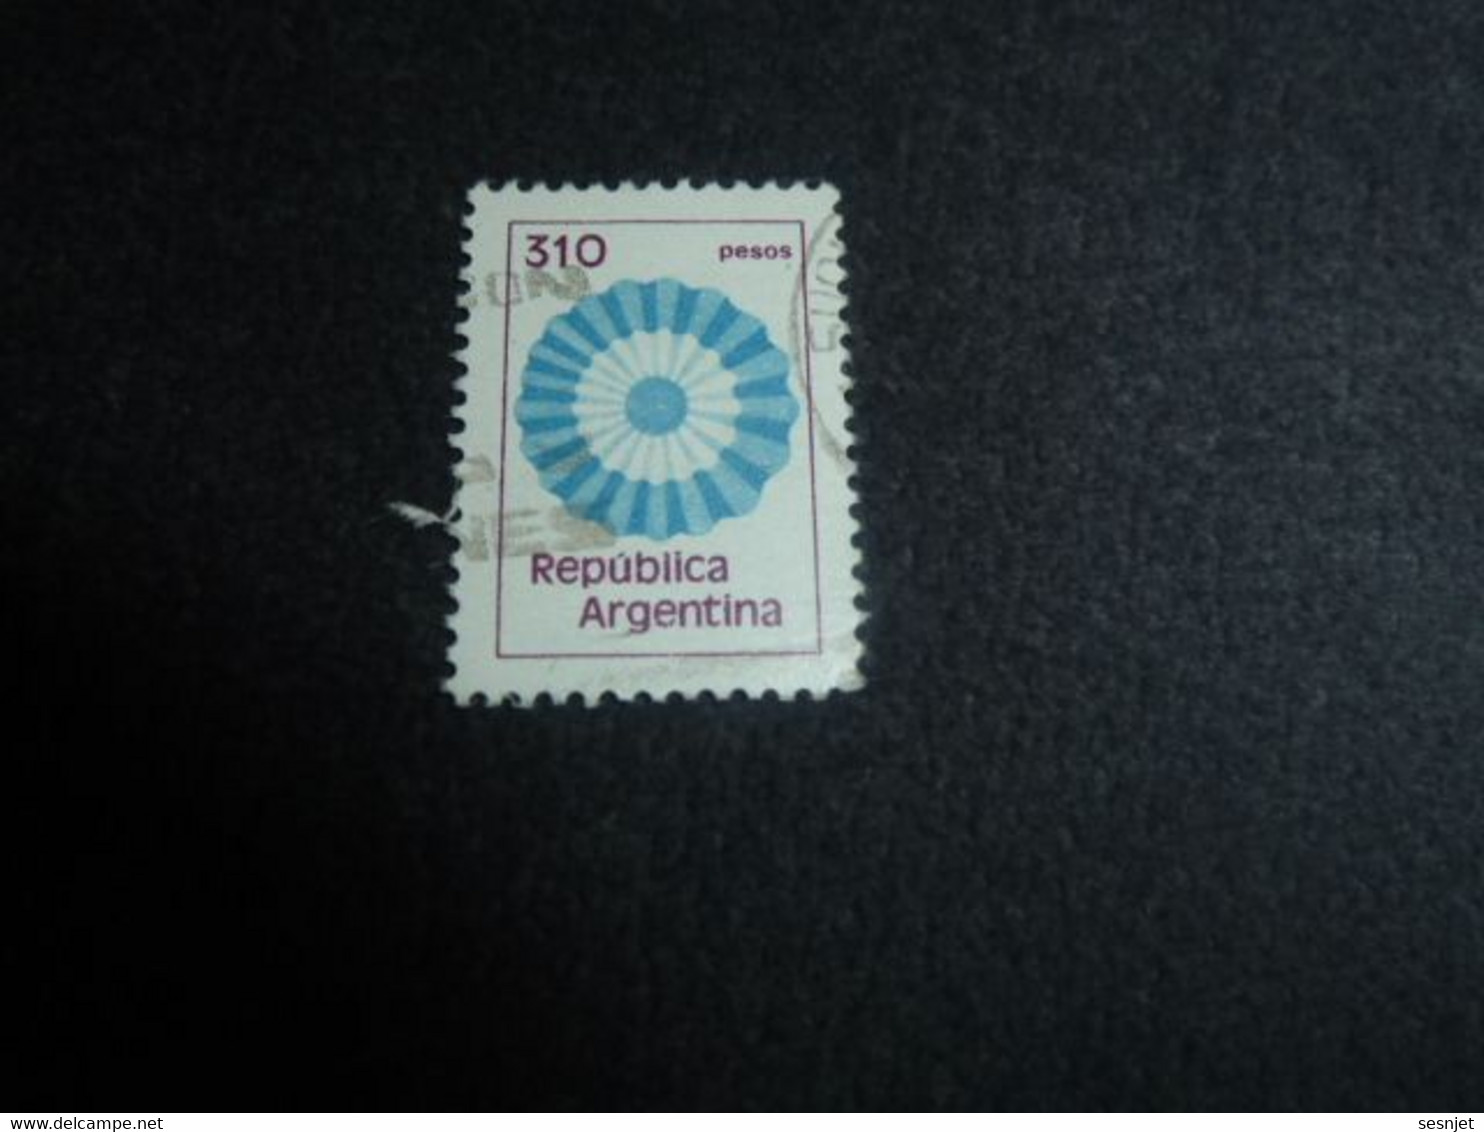 Republica Argentina - Rosace - 310 Pesos - Yt 1280 - 1288 - Multicolore - Oblitéré - Année 1981 - - Gebraucht